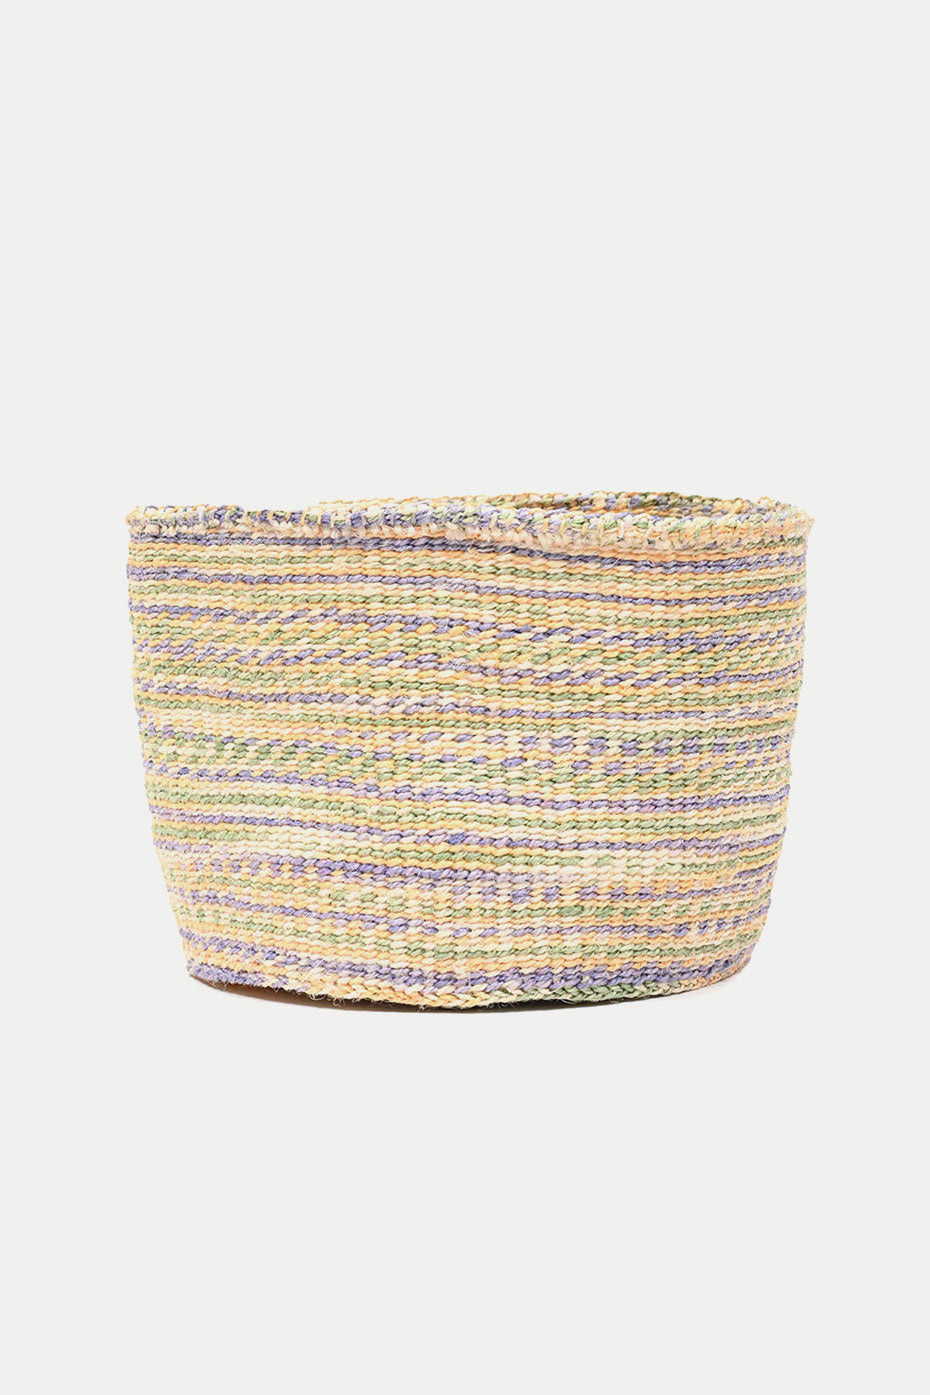 the-basket-room-lavender-soft-yellow-sapling-tie-dye-zaidi-basket-m